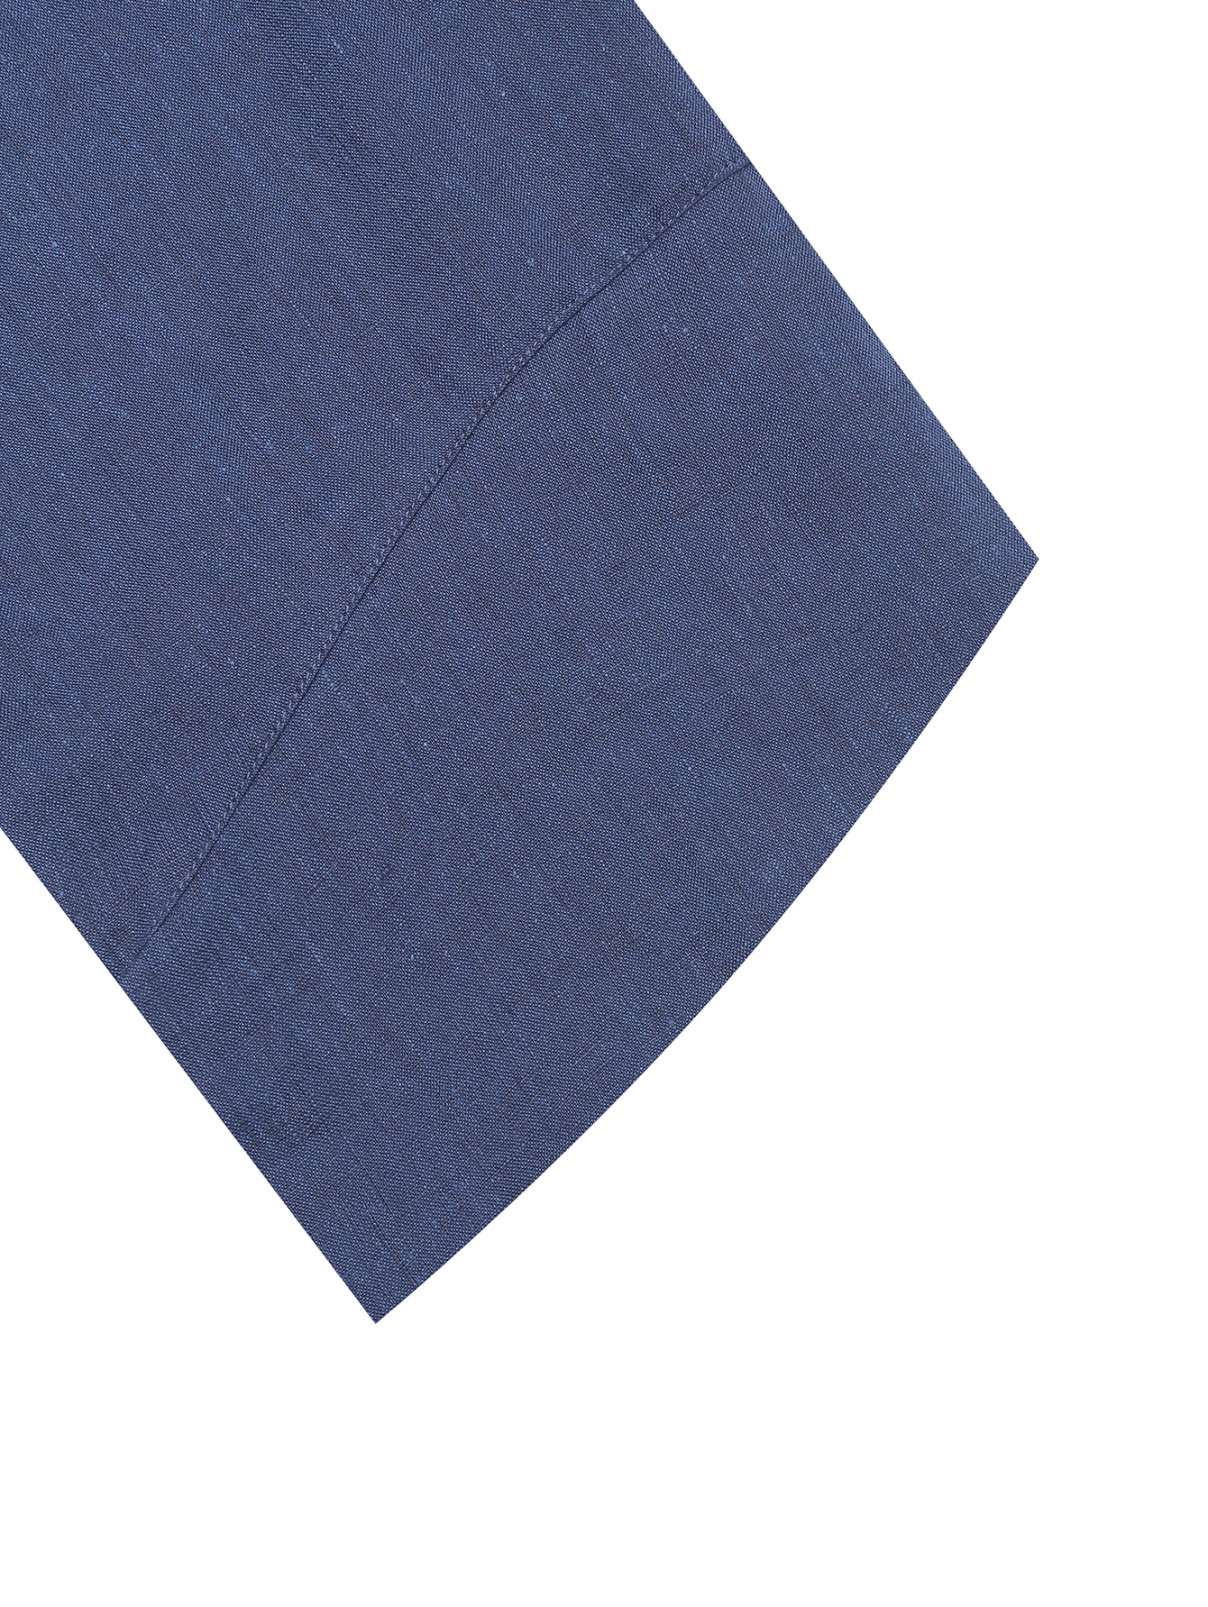 Блуза из льна с поясом Antelope The Label  –  Деталь  – Цвет:  Синий